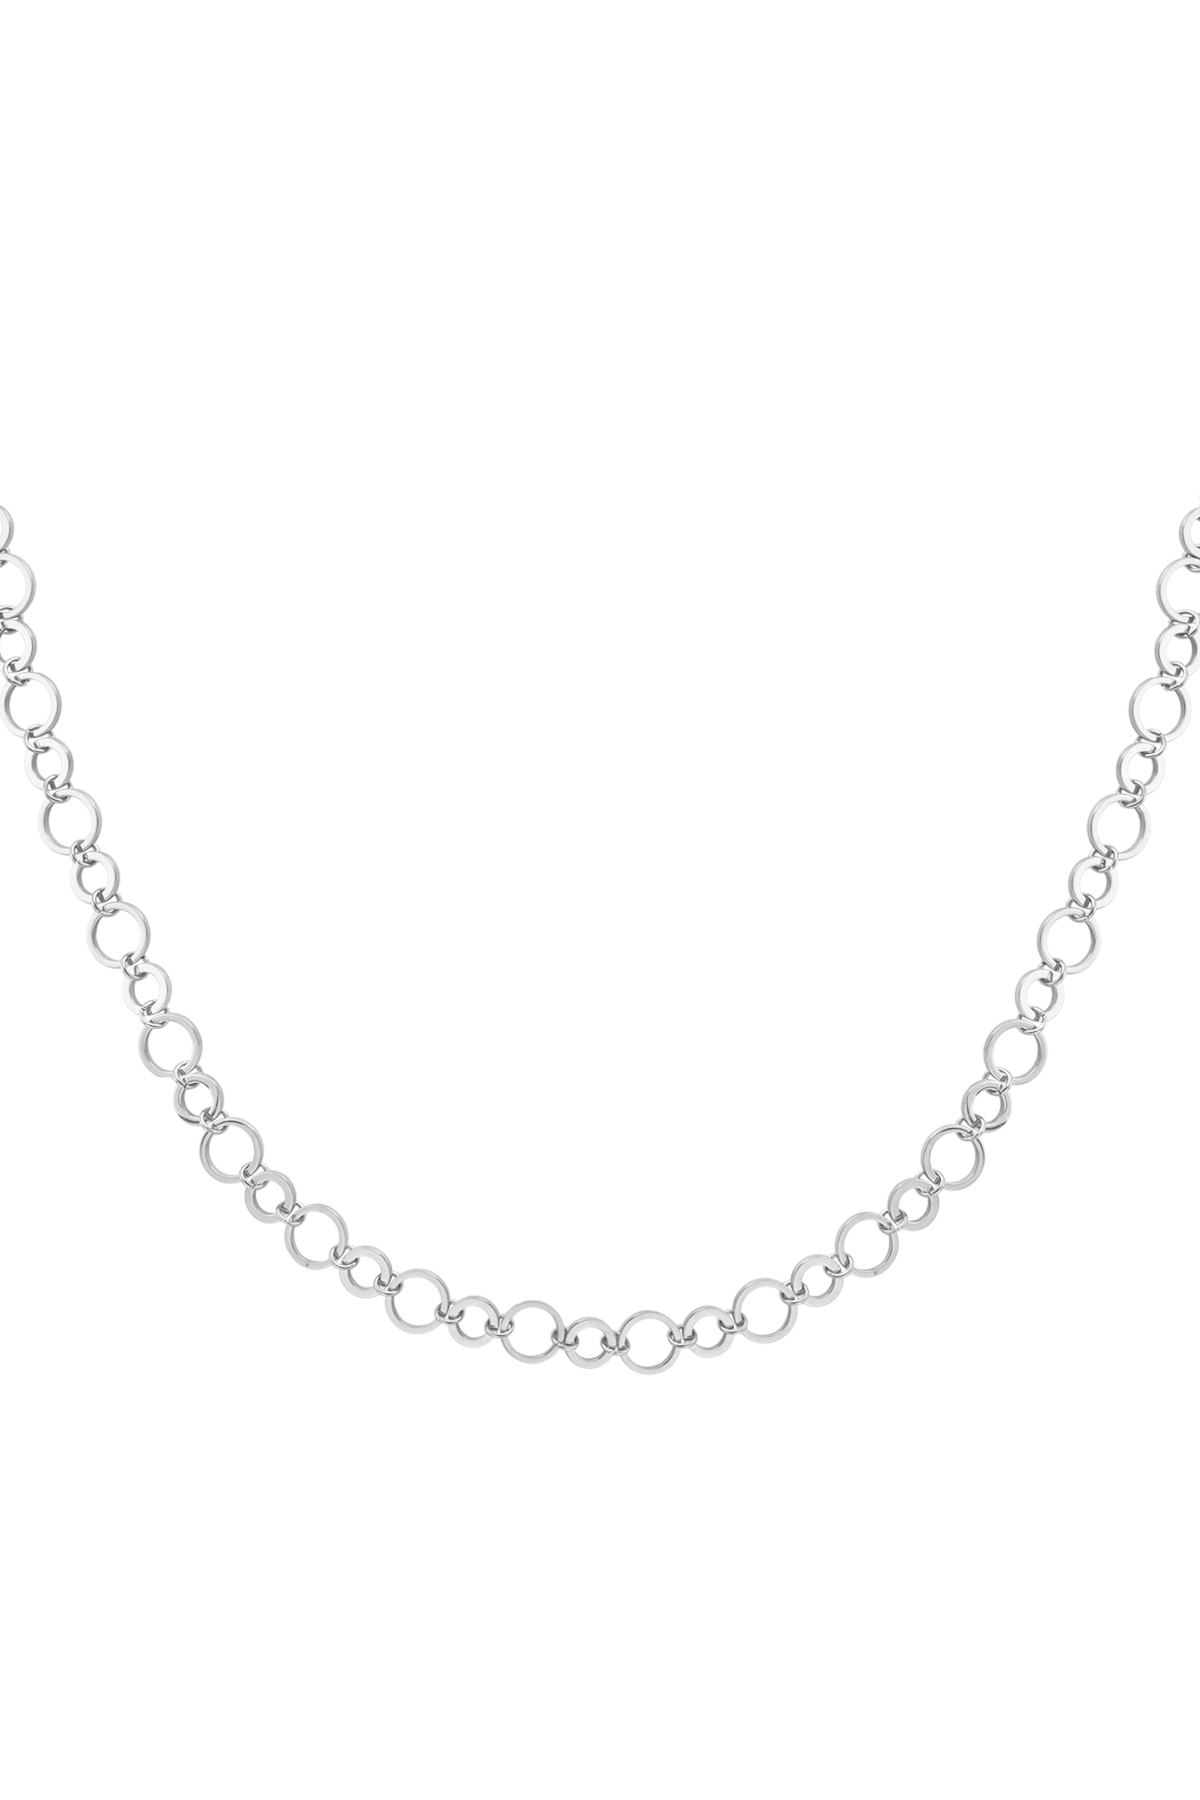 Halskette kleine und große runde Glieder - Silber h5 